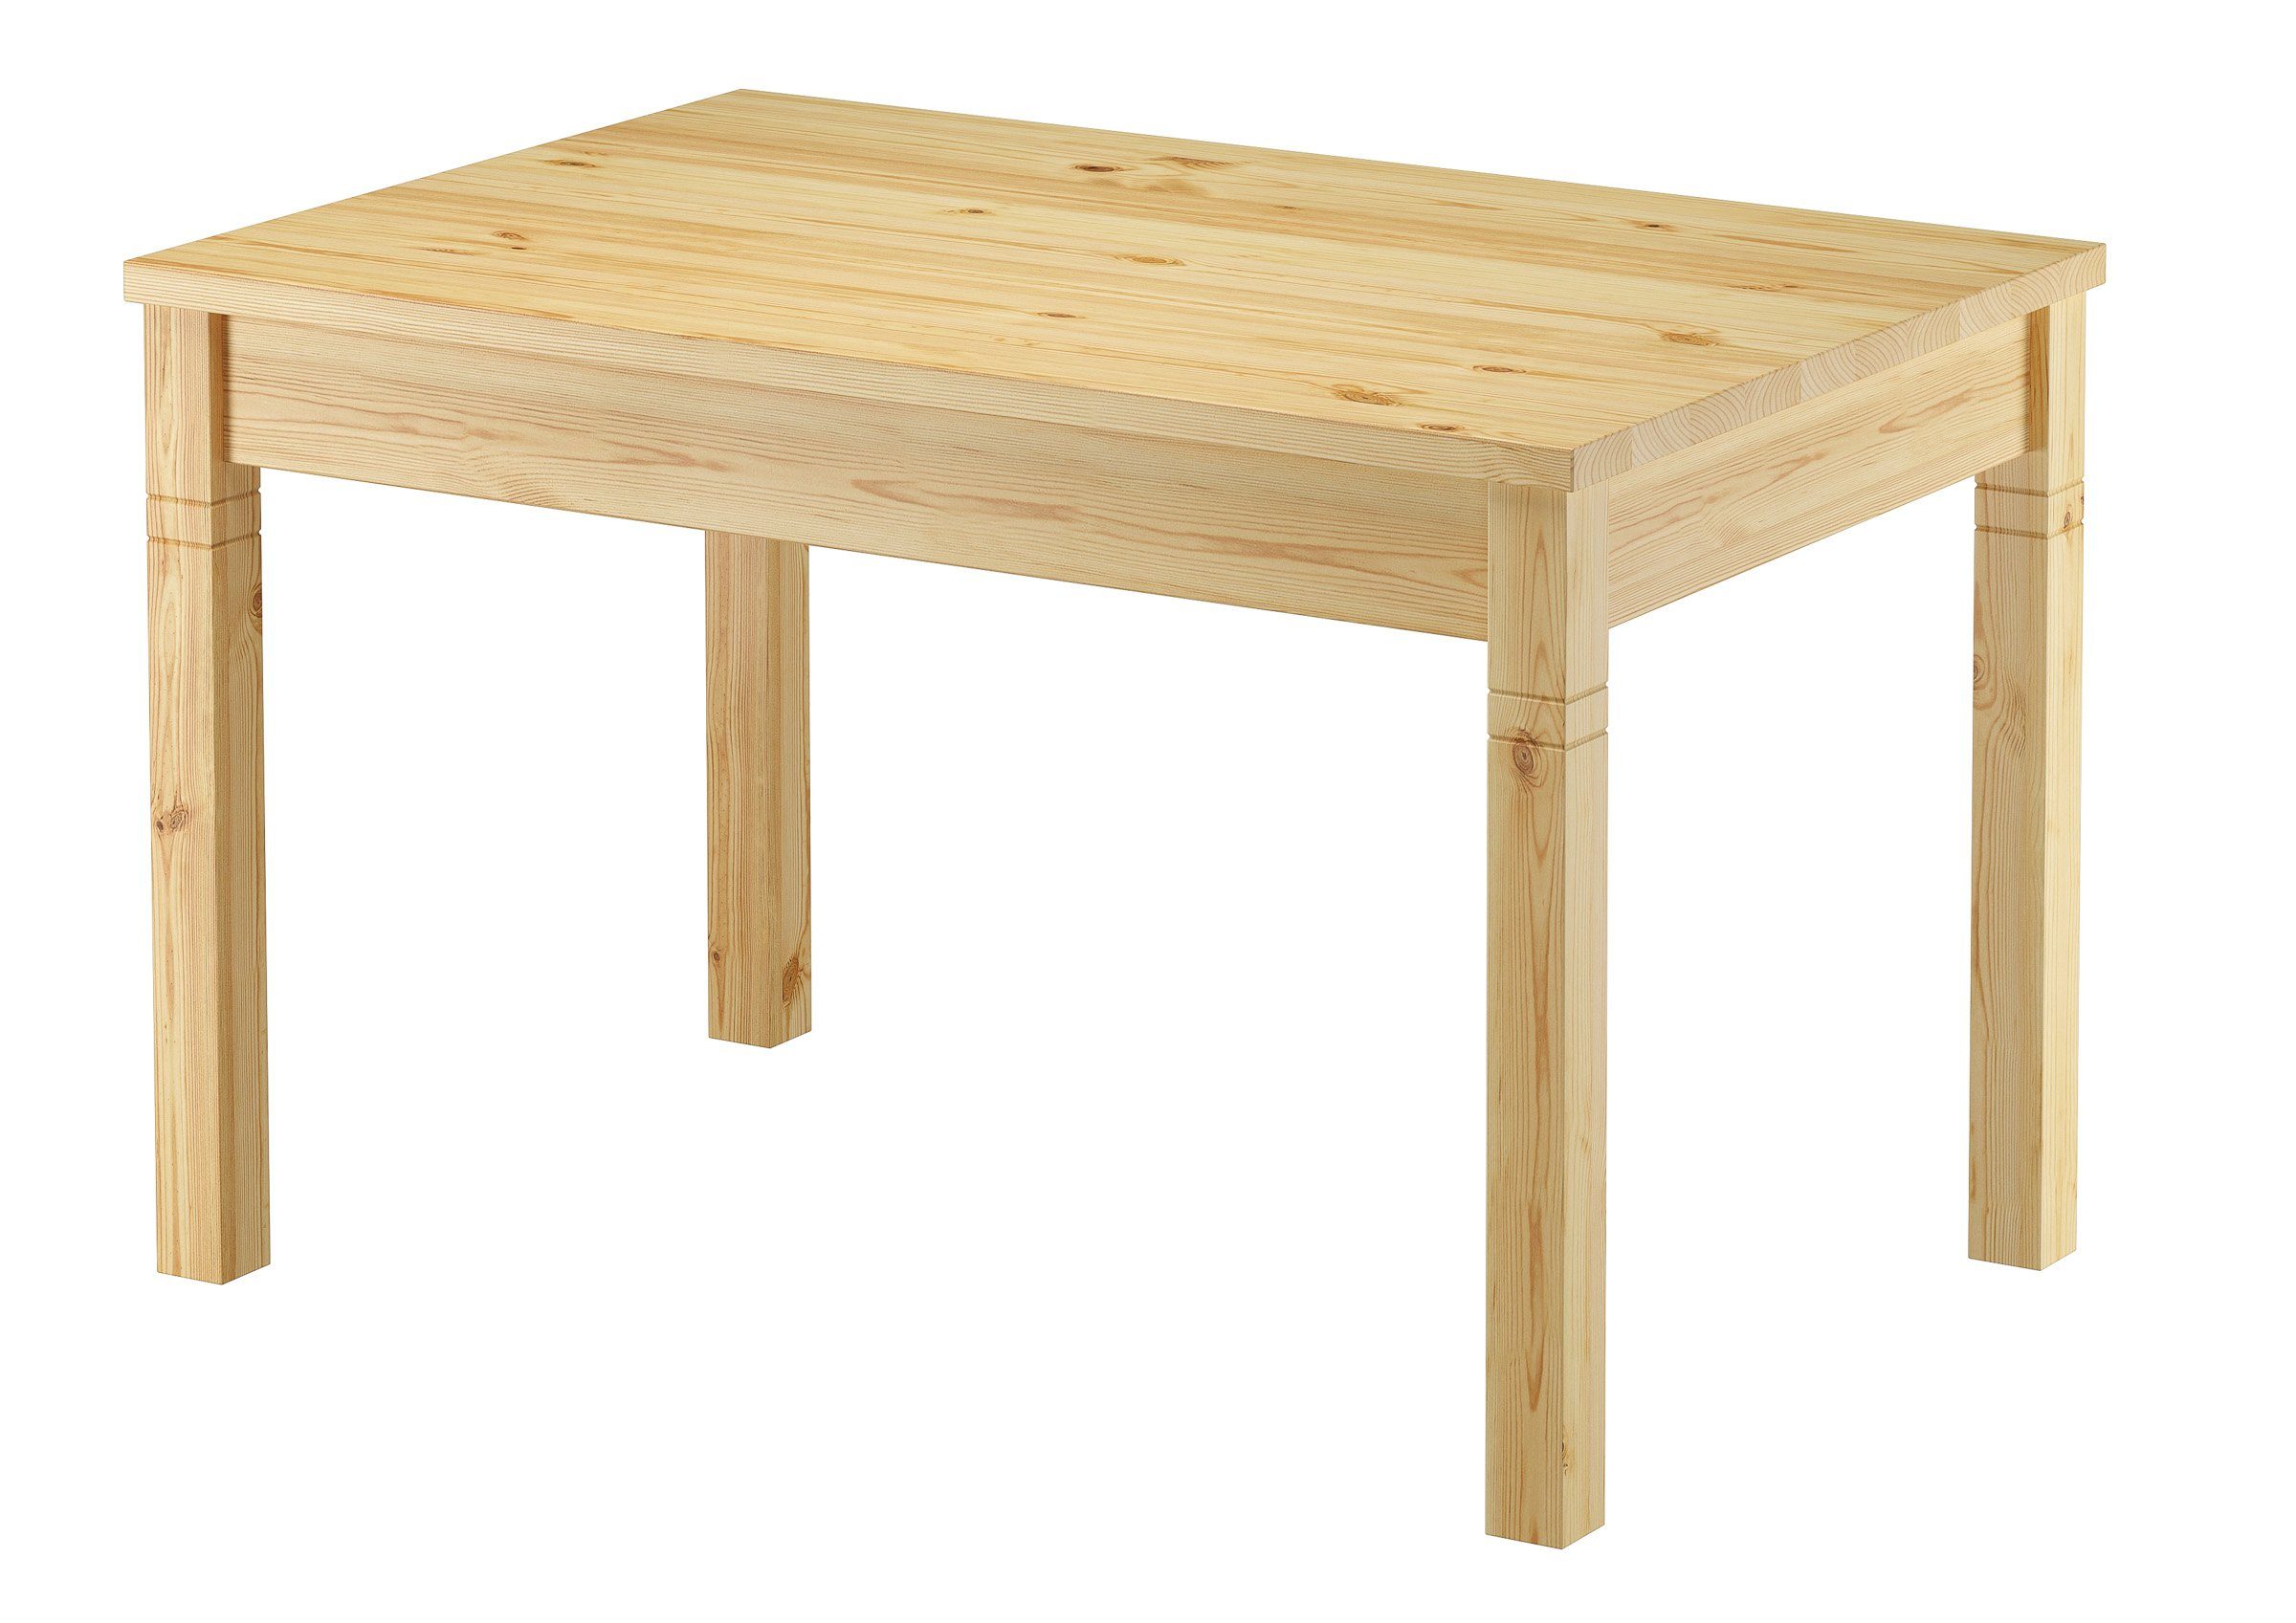 Super günstiger Kauf ERST-HOLZ Küchentisch Küchentisch Holztisch Massivholz Kiefer schöne Maserung 120x80